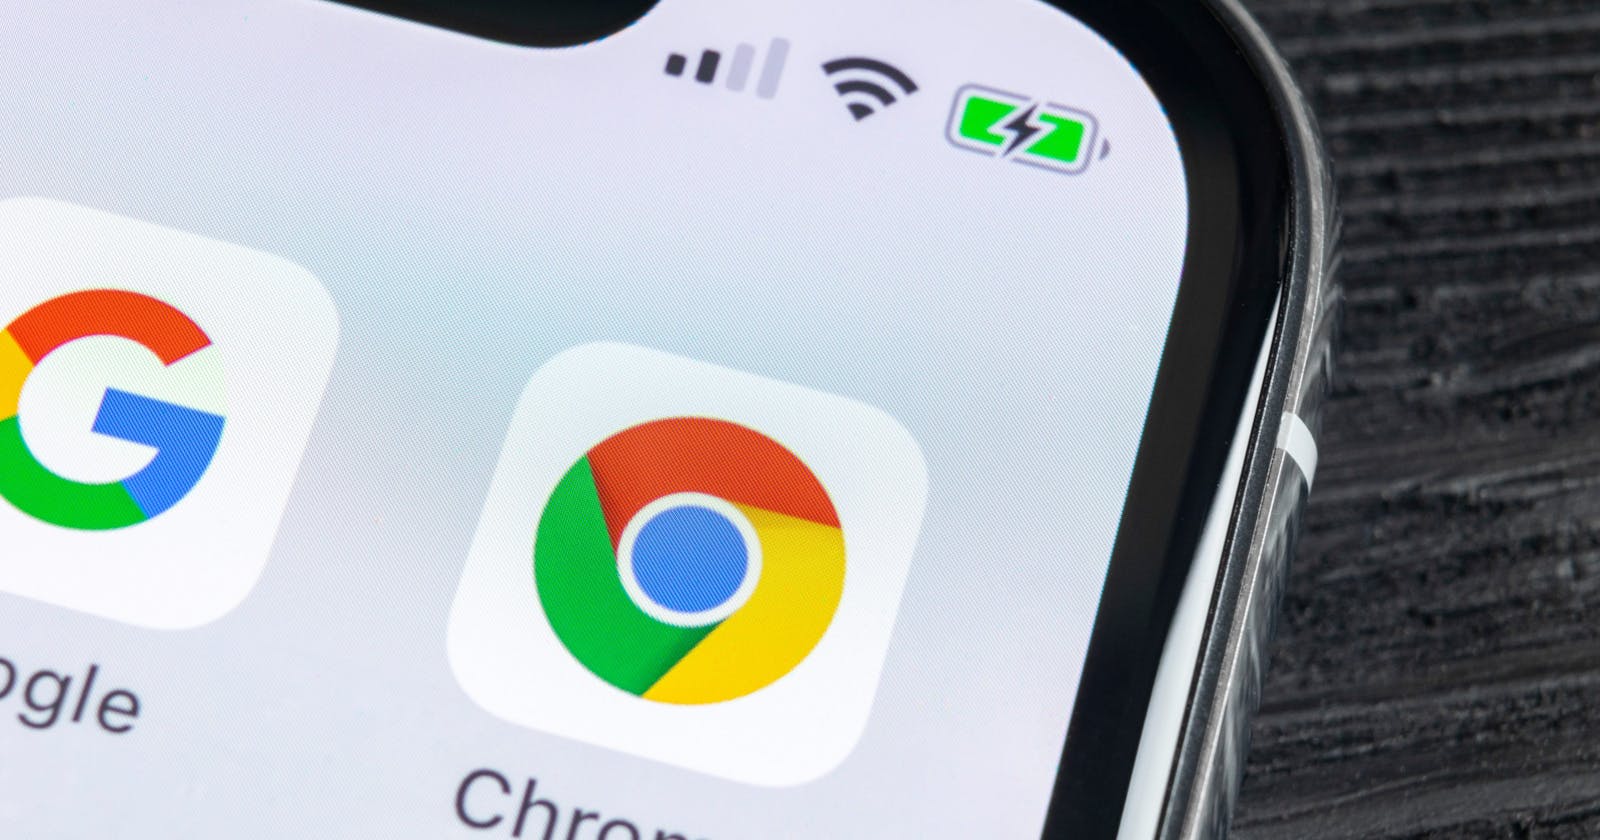 Google Chrome User Guide for Mobile